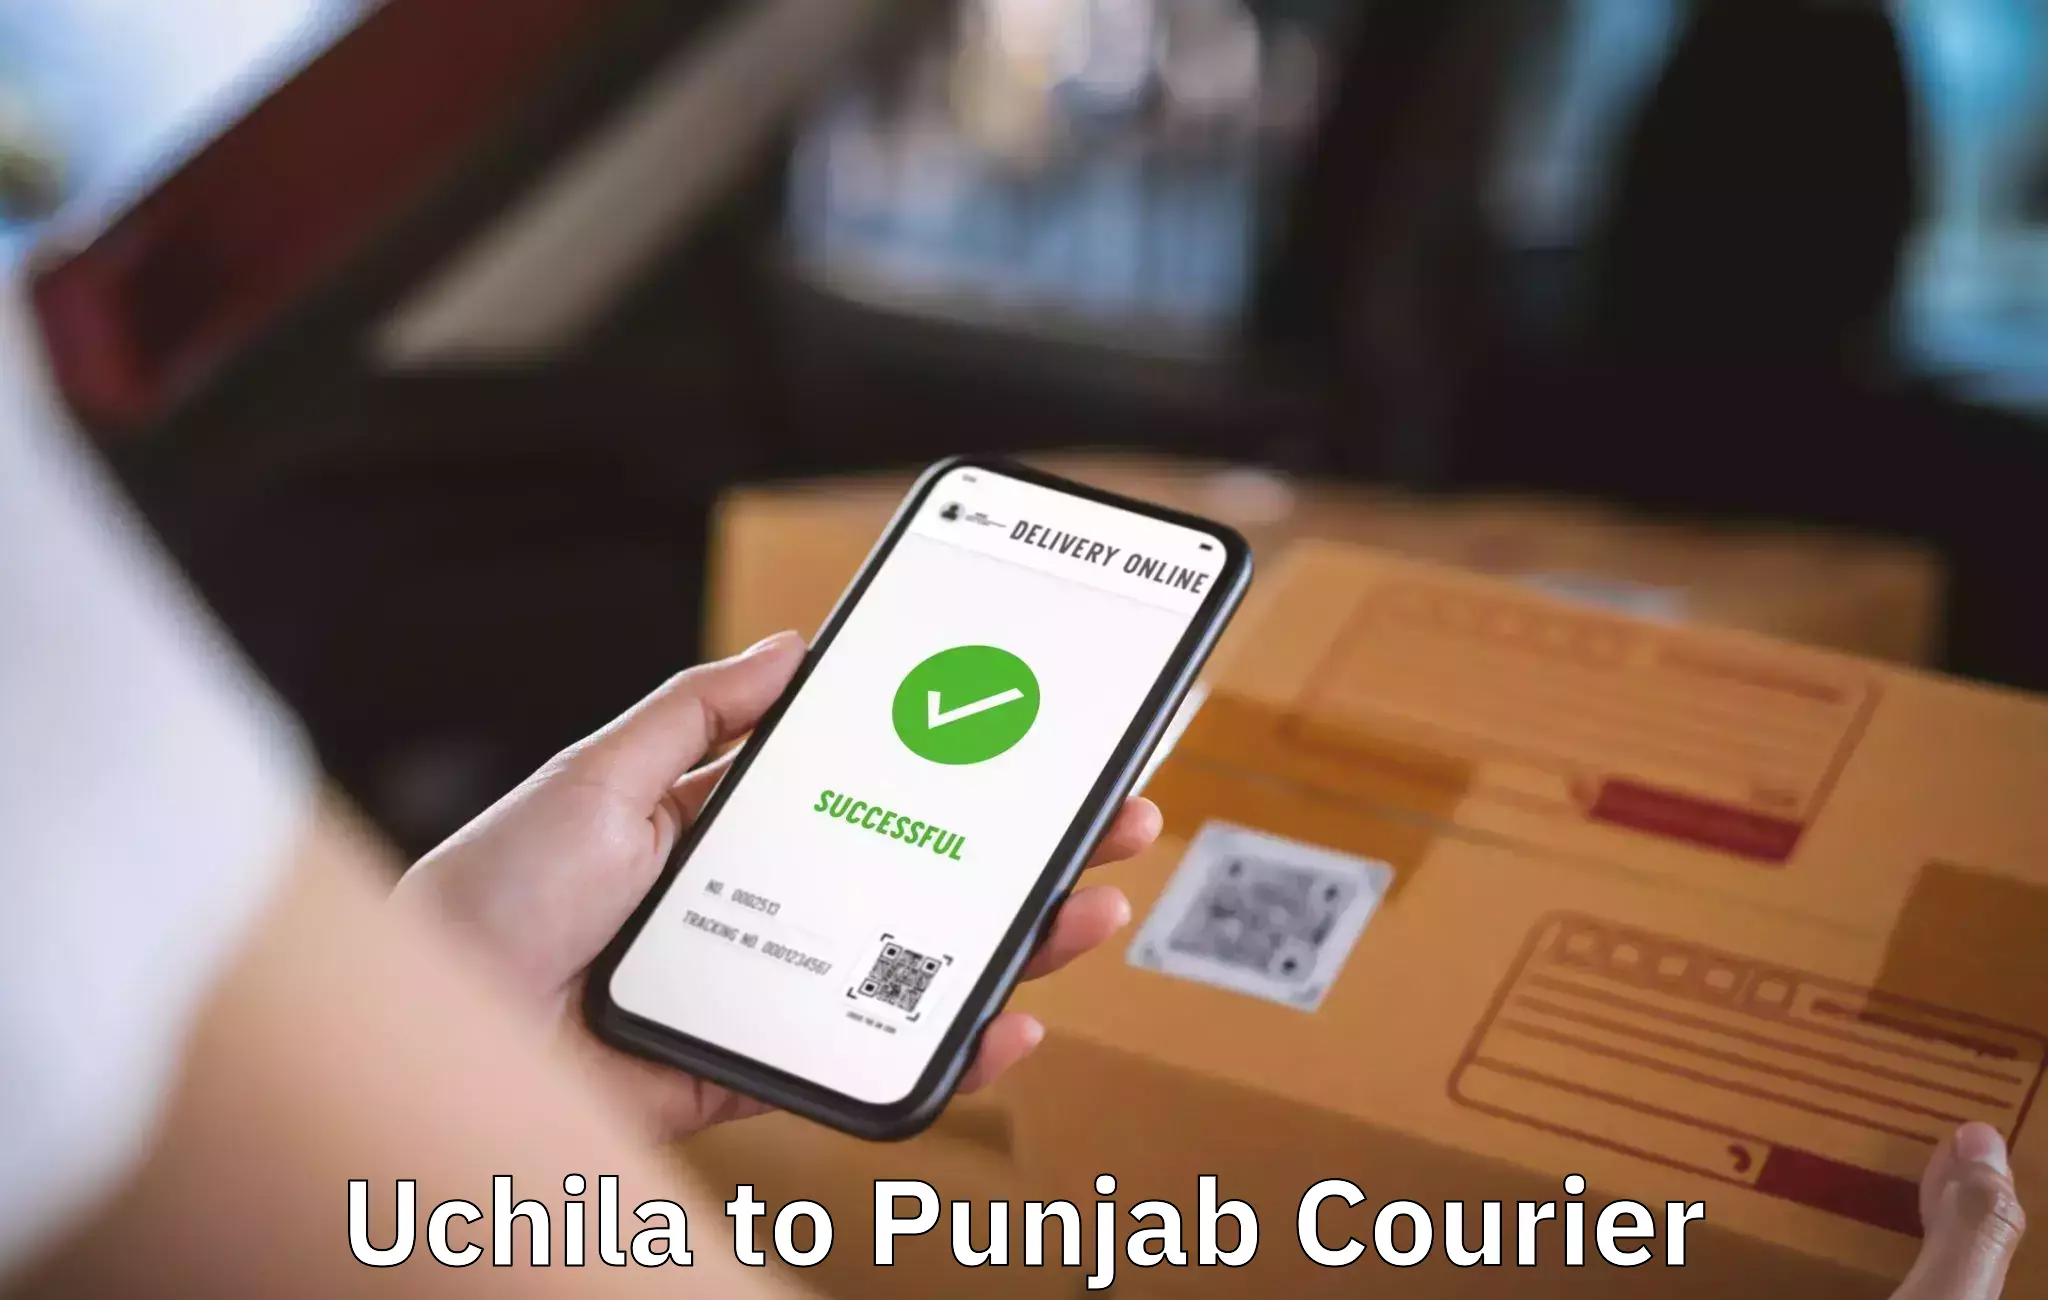 Furniture handling services Uchila to Punjab